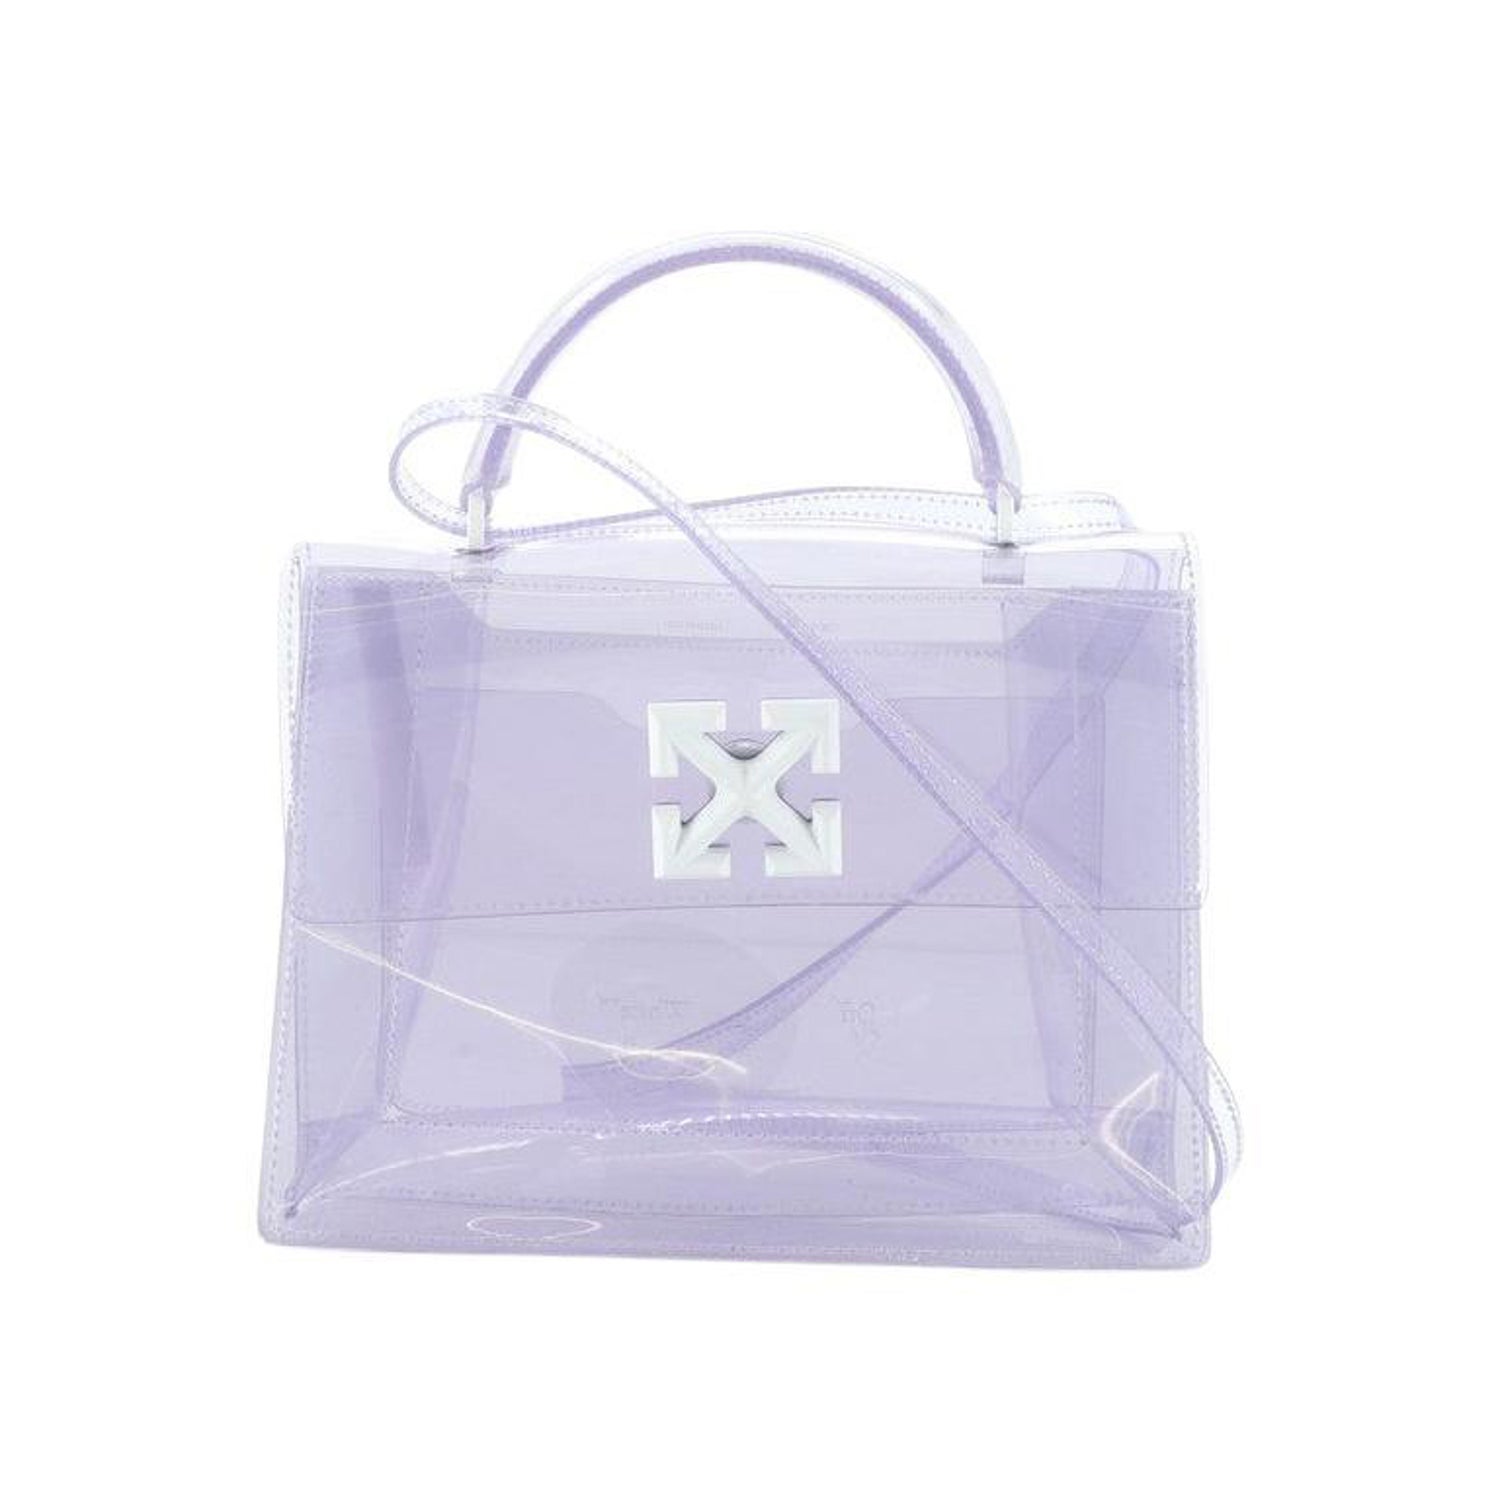 Off White Violet Jitney 1.4 crossbody bag - I-MAGAZINE Inc